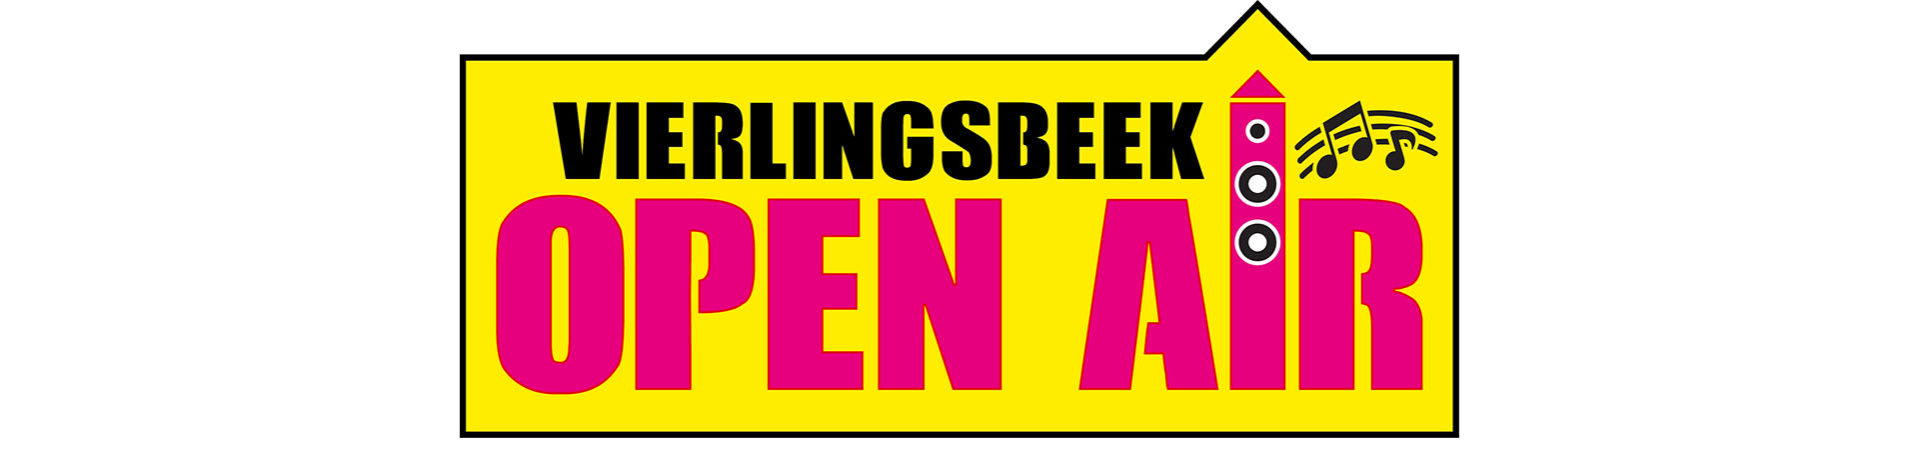 vierlingsbeek-open-air-1920x40